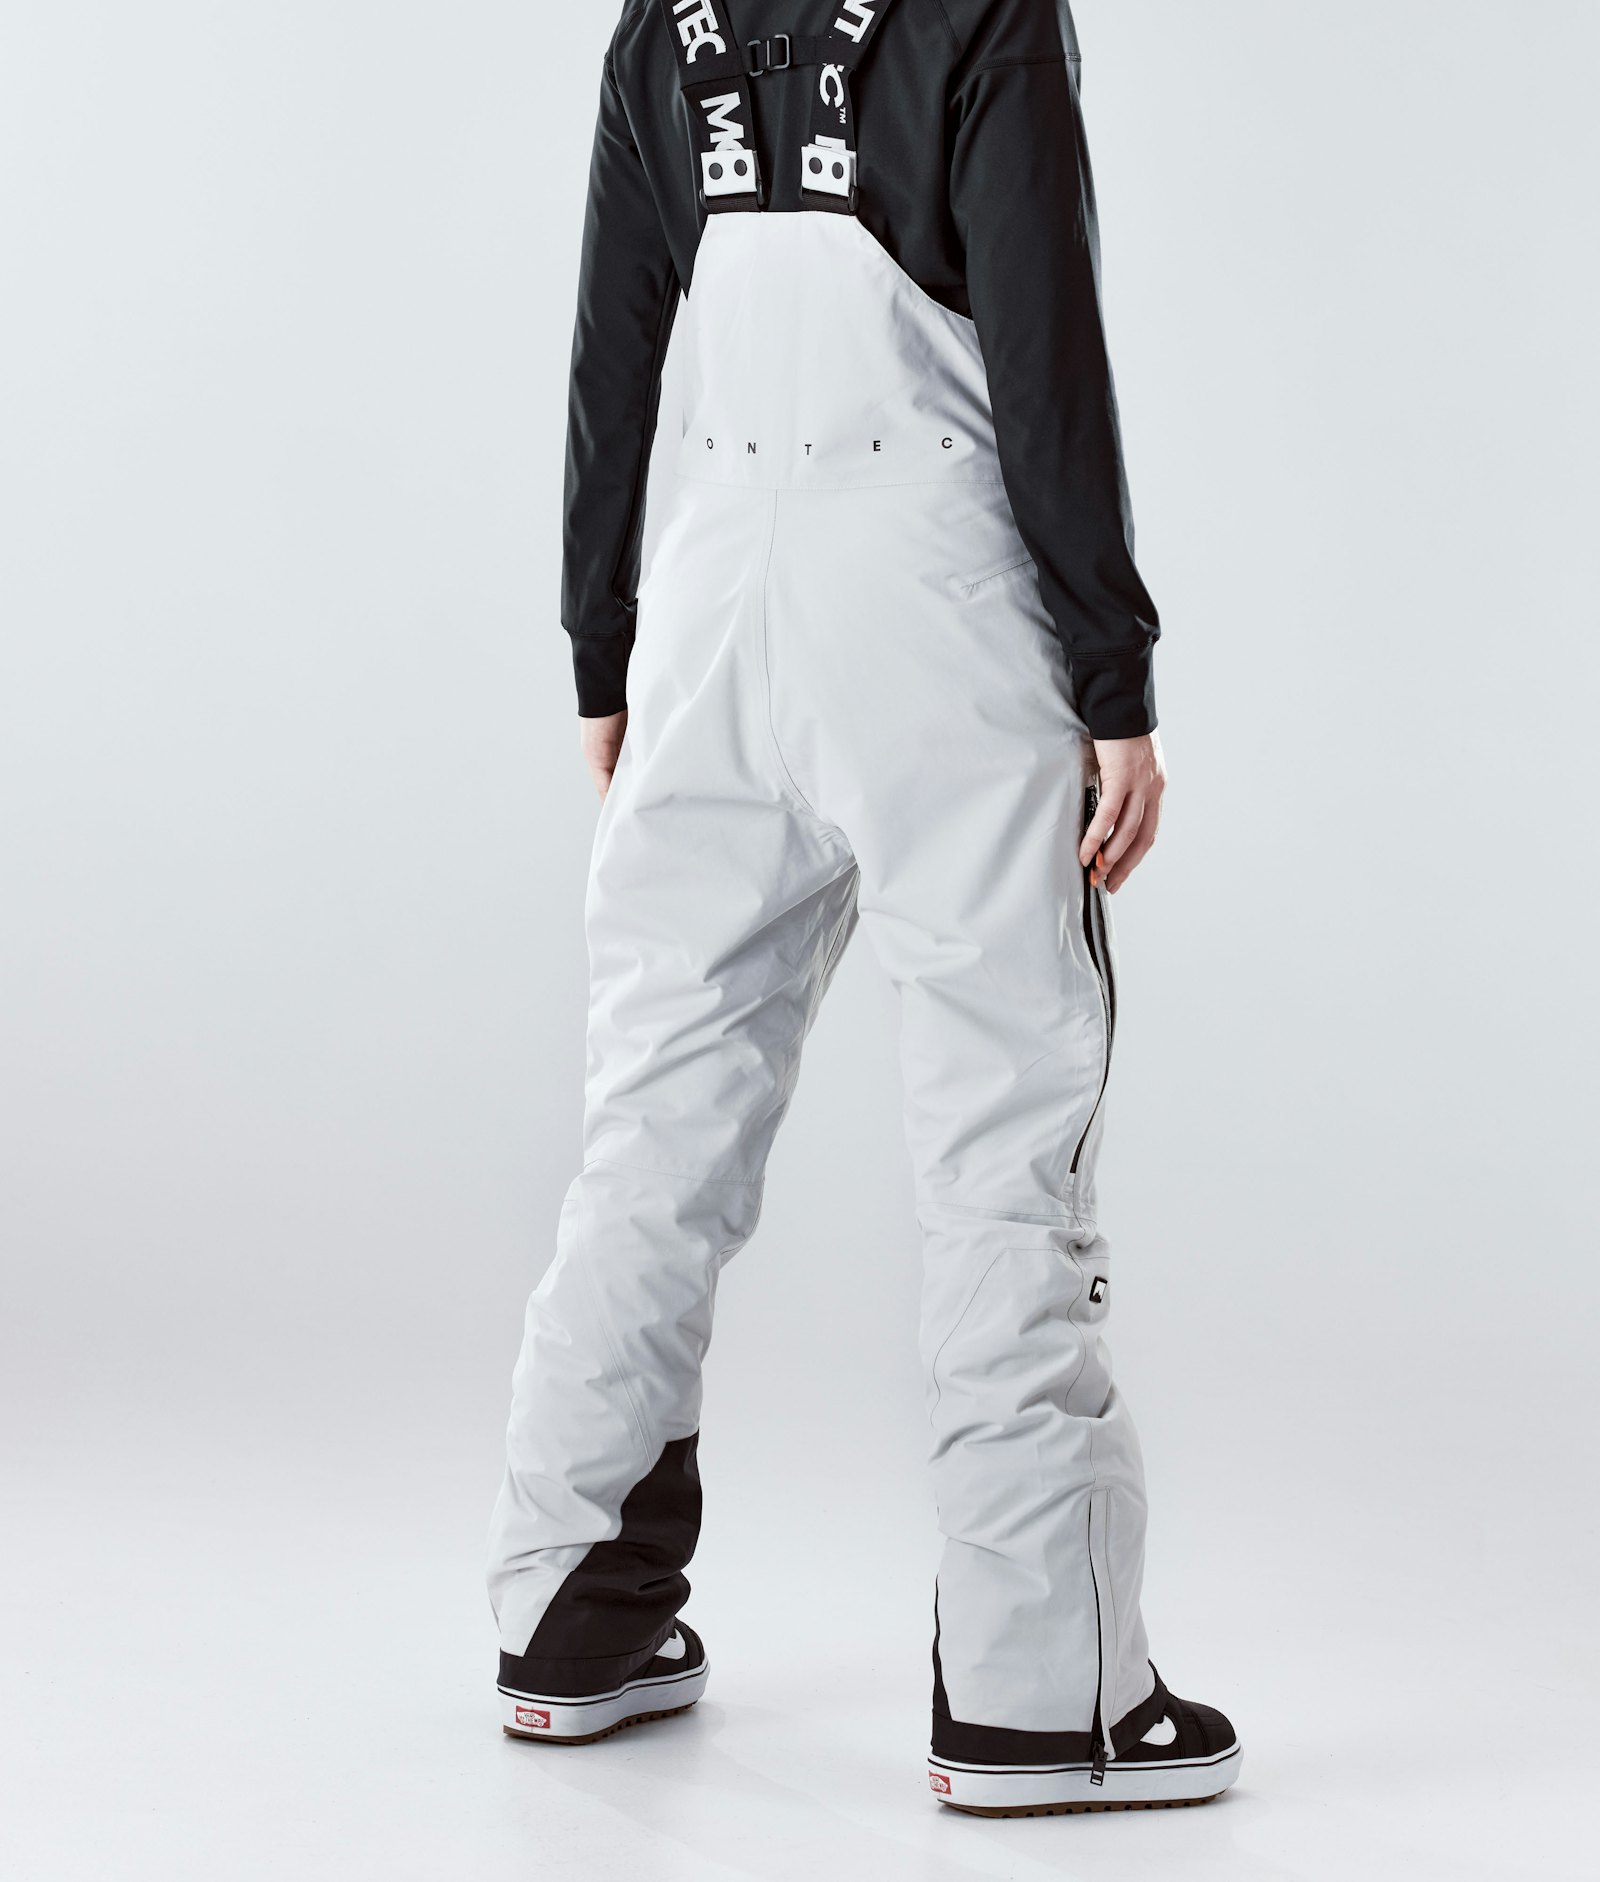 Fawk W 2020 Snowboard Pants Women Light Grey